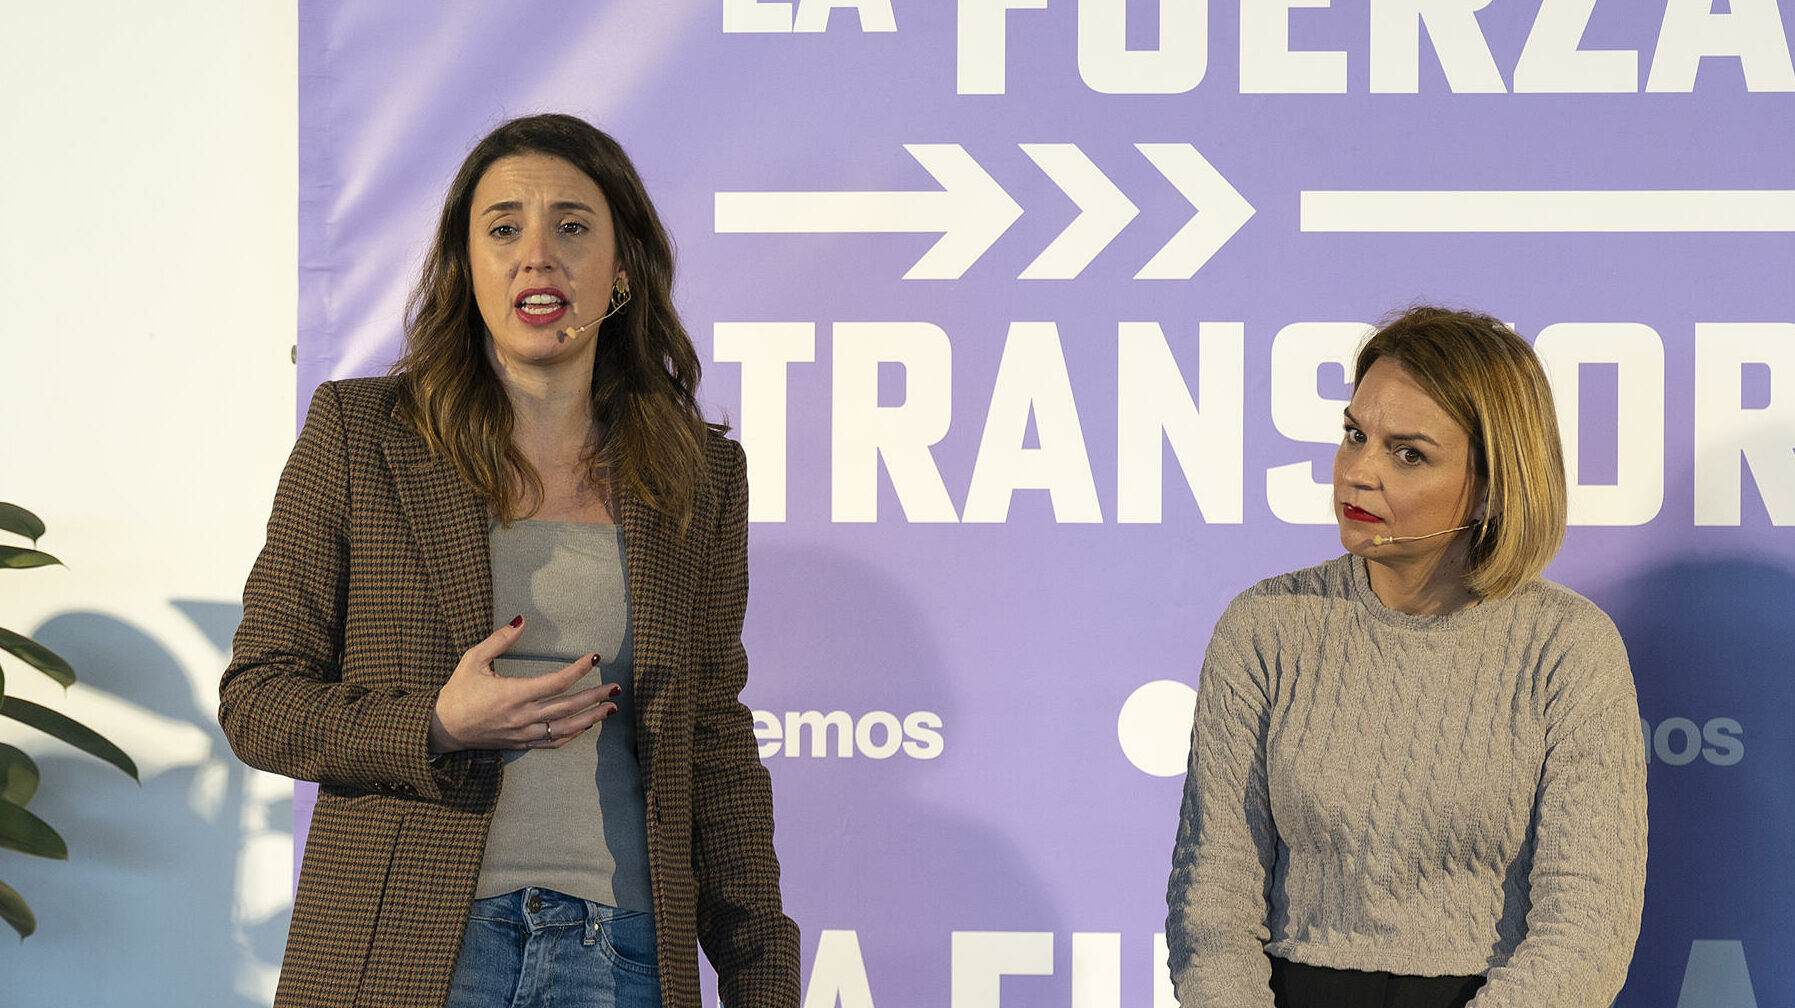 La ministra de Igualdad, Irene Montero, participa en un acto político de Podemos en Lanzarote